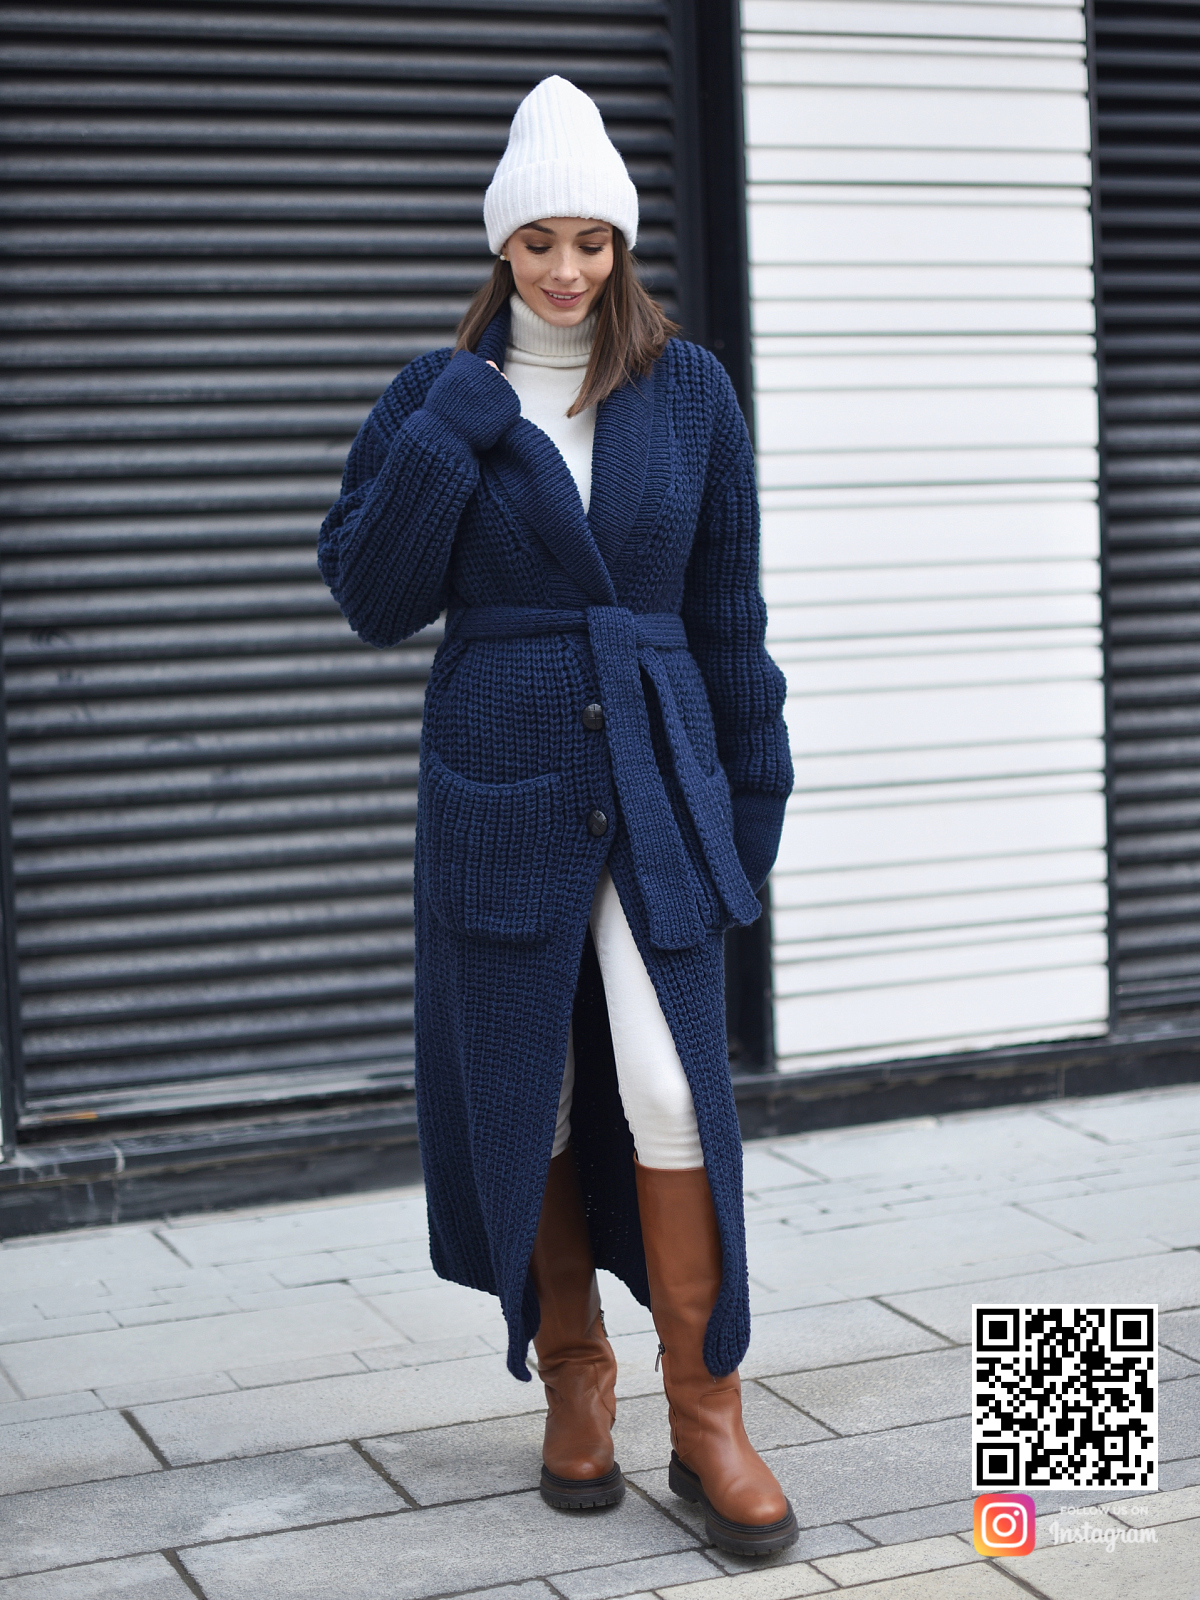 На восьмой фотографии теплый кардиган синий женский из шерсти в интернет-магазине вязаной одежды Shapar.